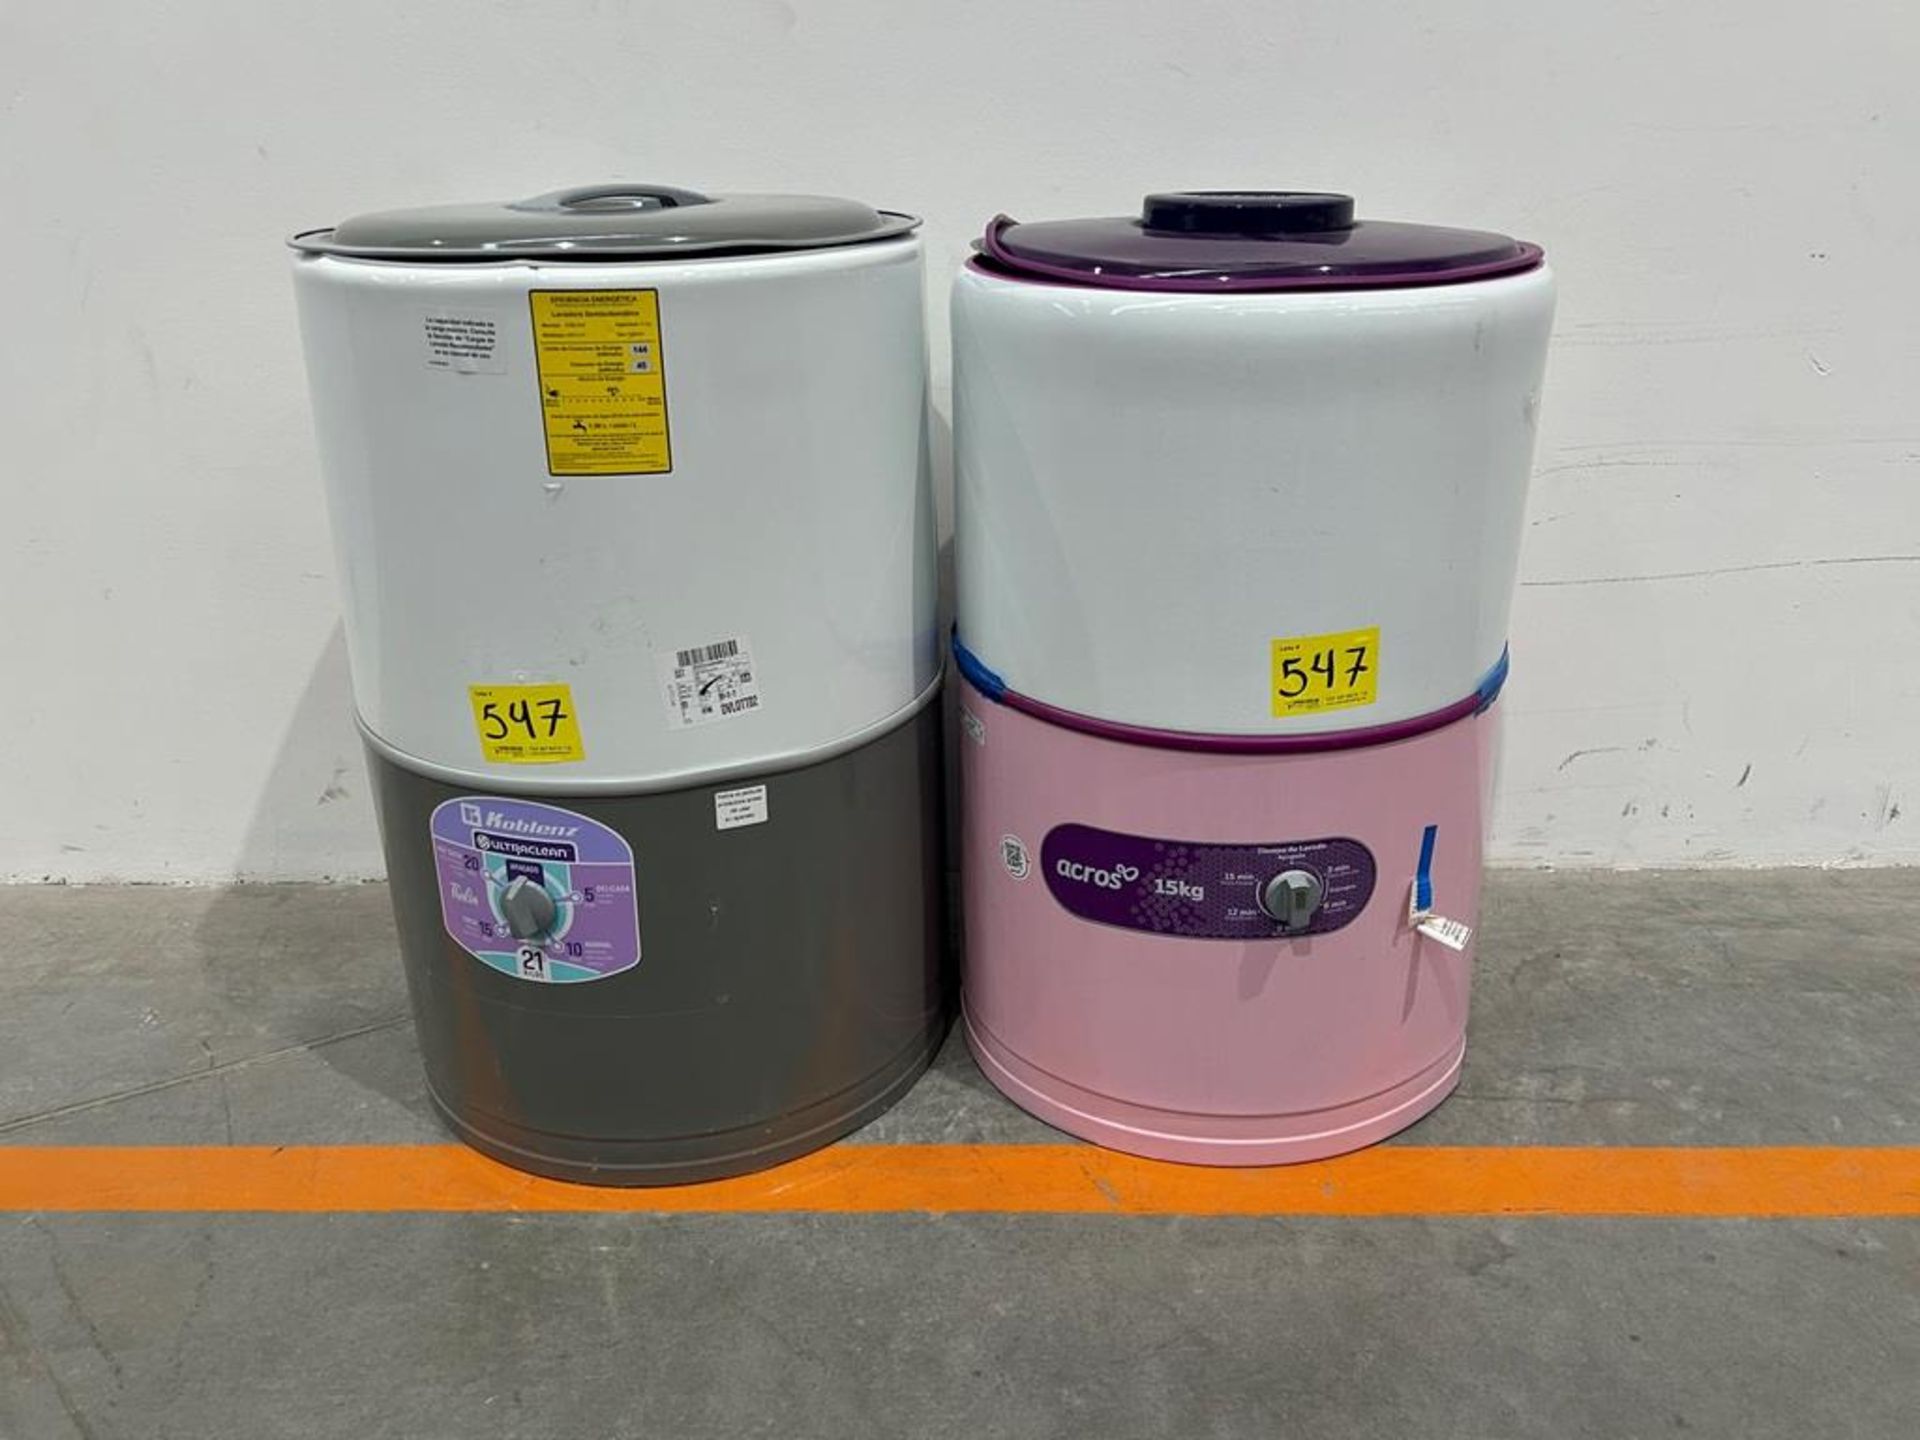 Lote de 2 lavadoras contiene: 1 Lavadora de 21KG Marca KOBLENZ, Modelo LRKF21P, Serie 031977, Color